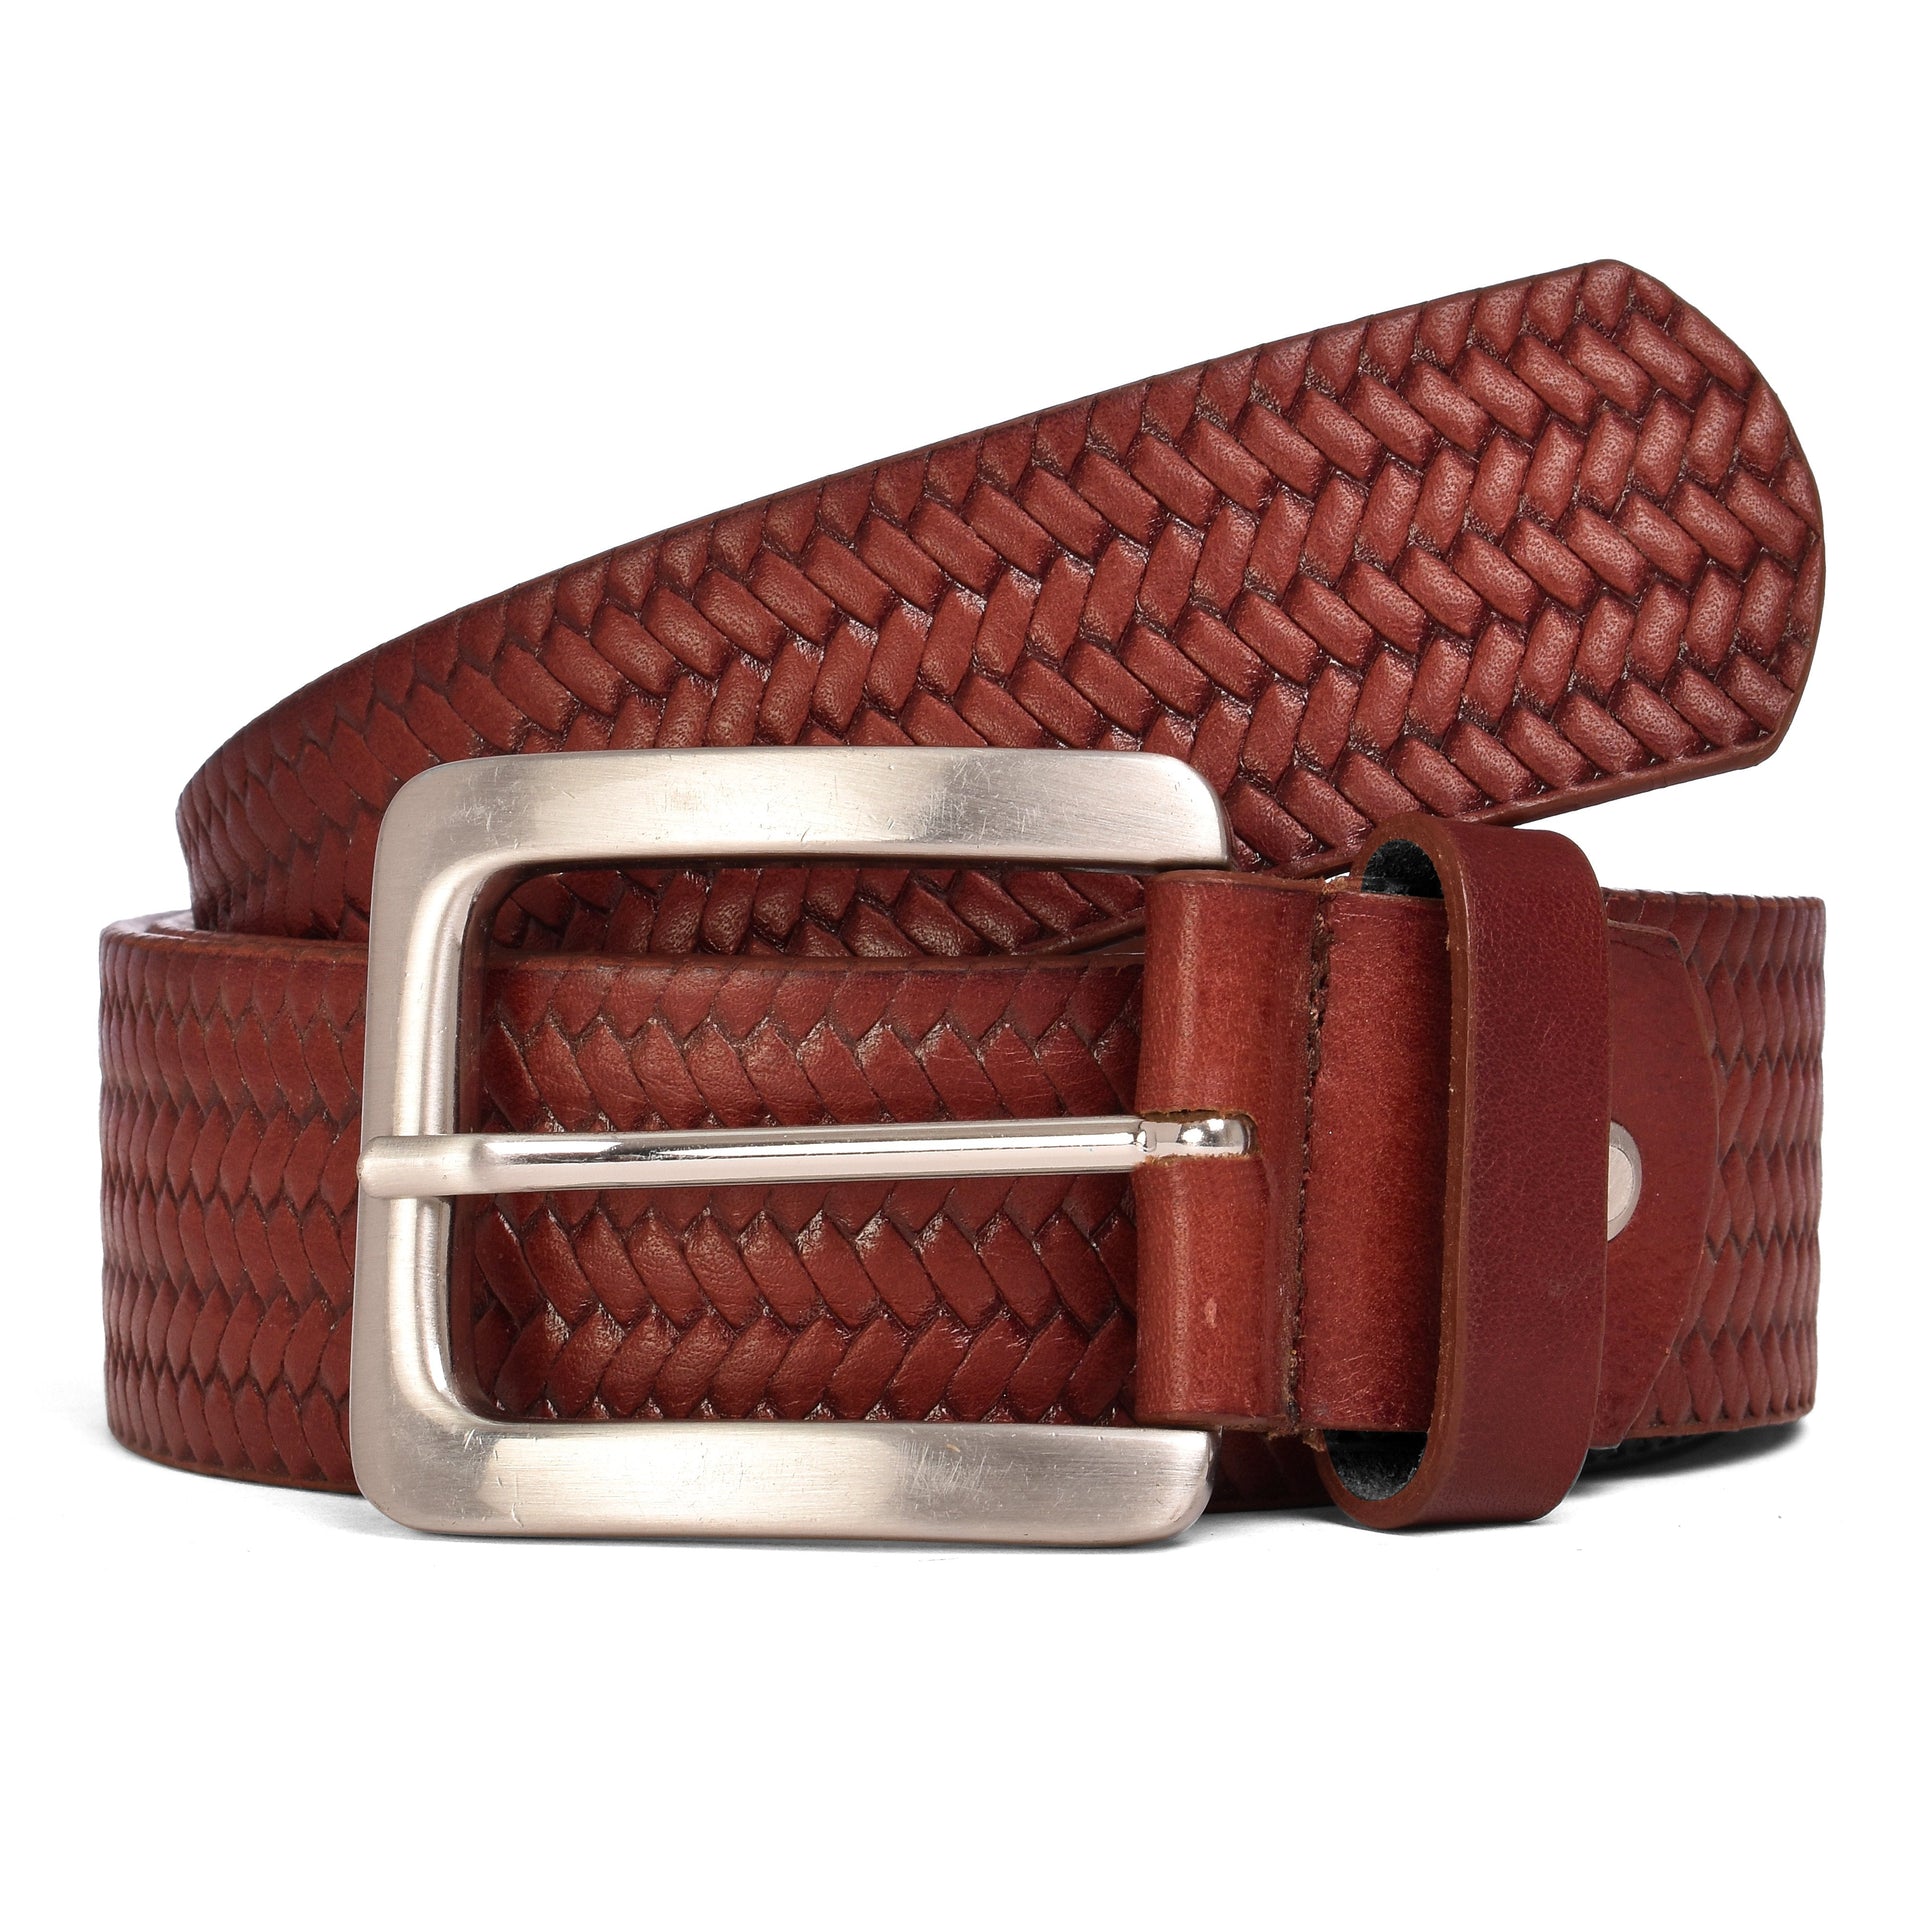 Knitted Celebrity Belt - Bordeaux / 30 inch - 75 cm - Belts